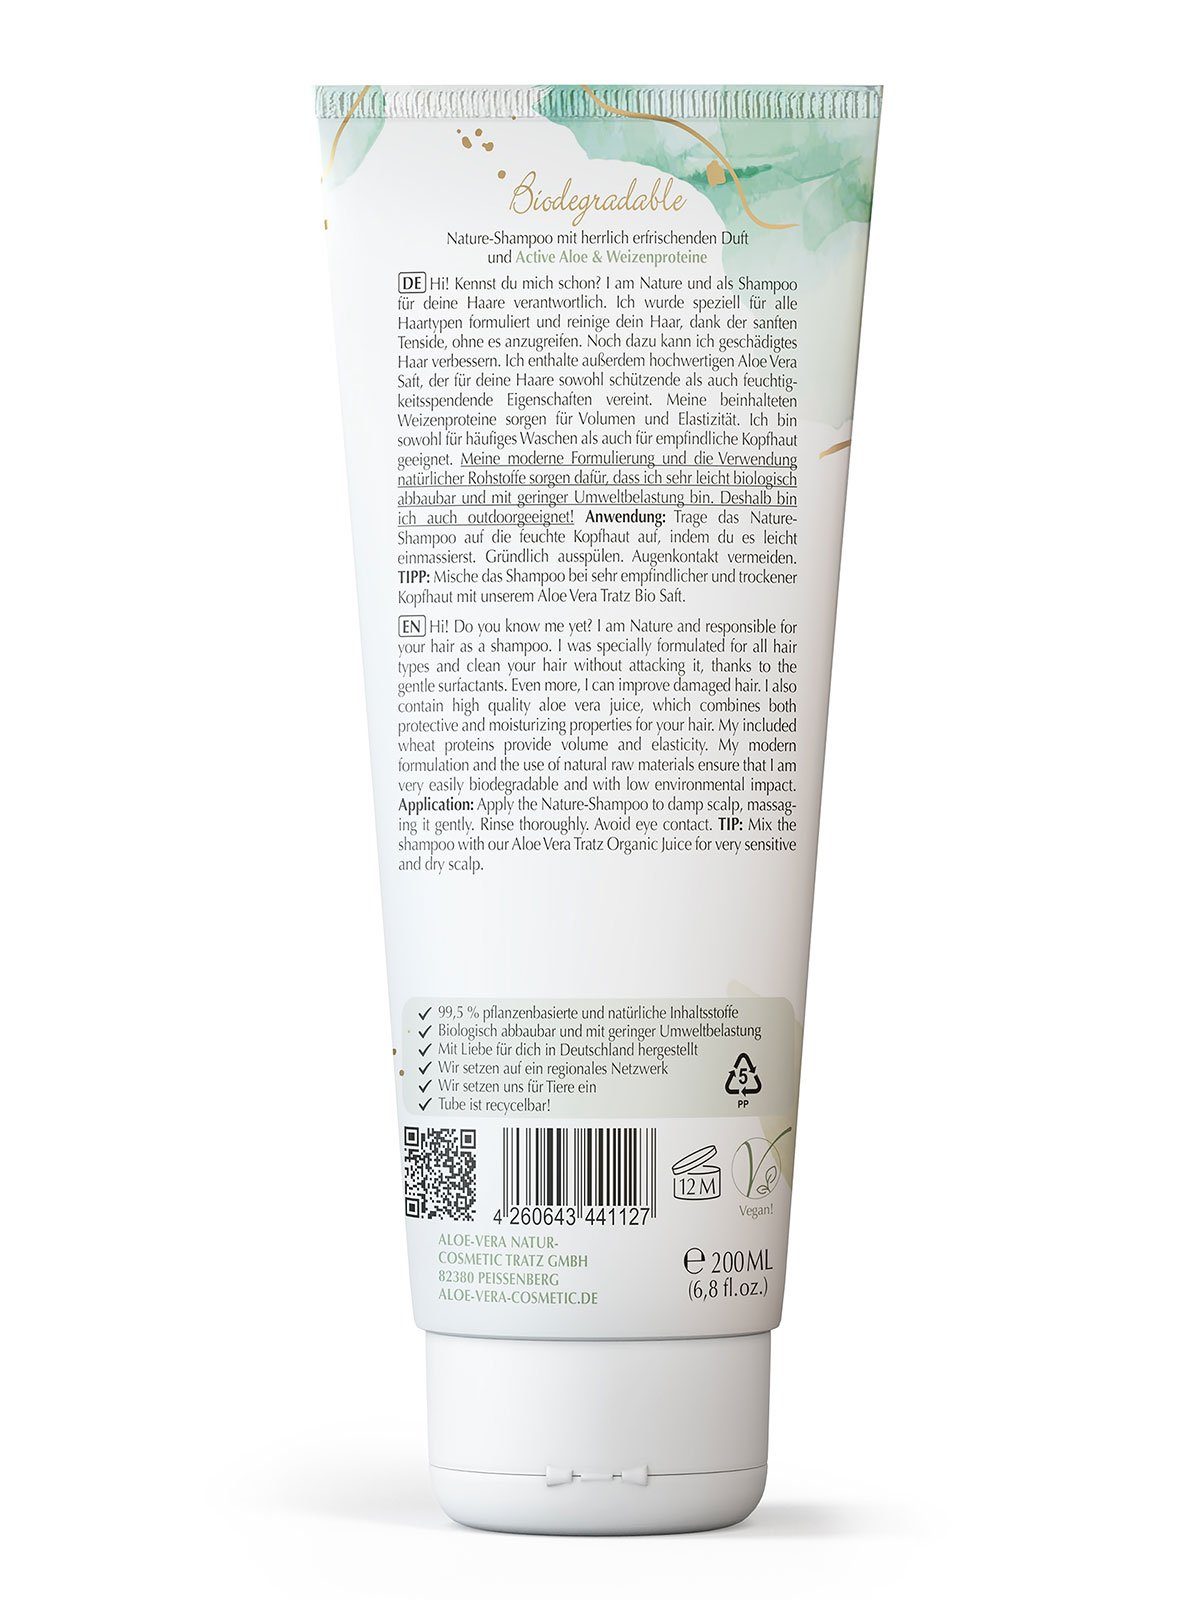 Cosmetic Nature Haarshampoo Vera Aloe Tratz 1-tlg. Shampoo,